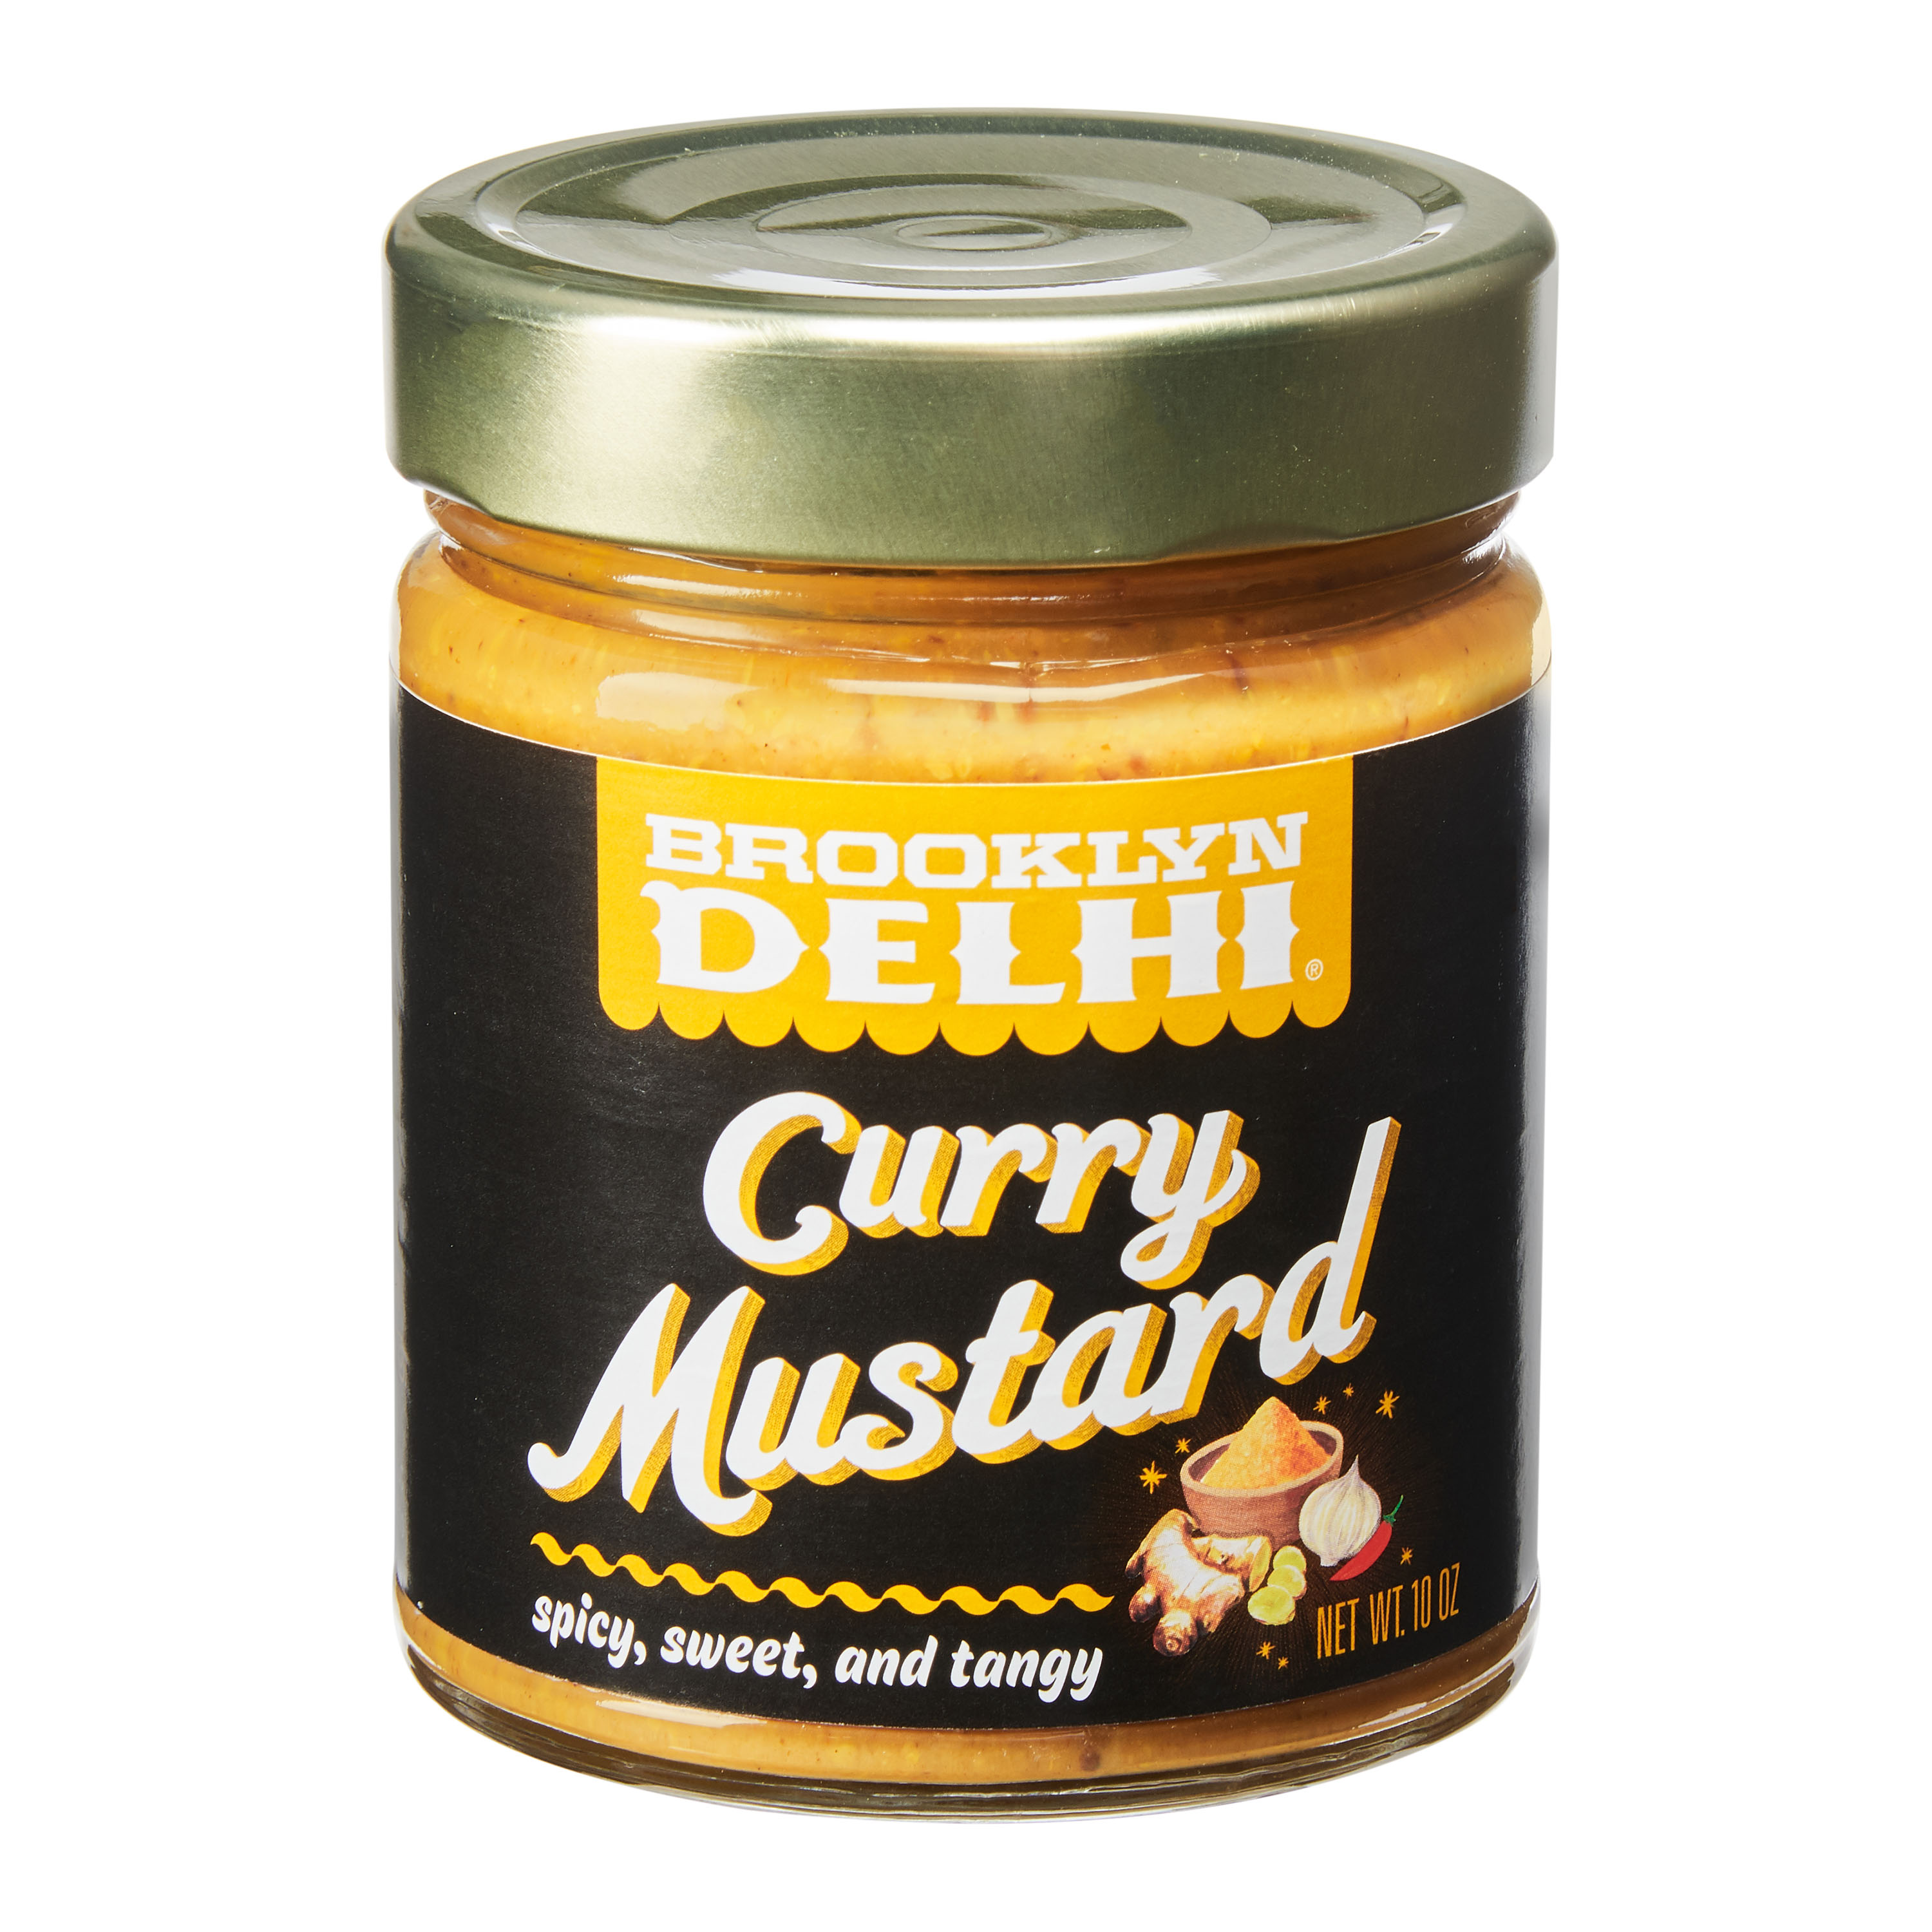 Brooklyn Delhi Curry Mustard, 10 oz - image 1 of 4